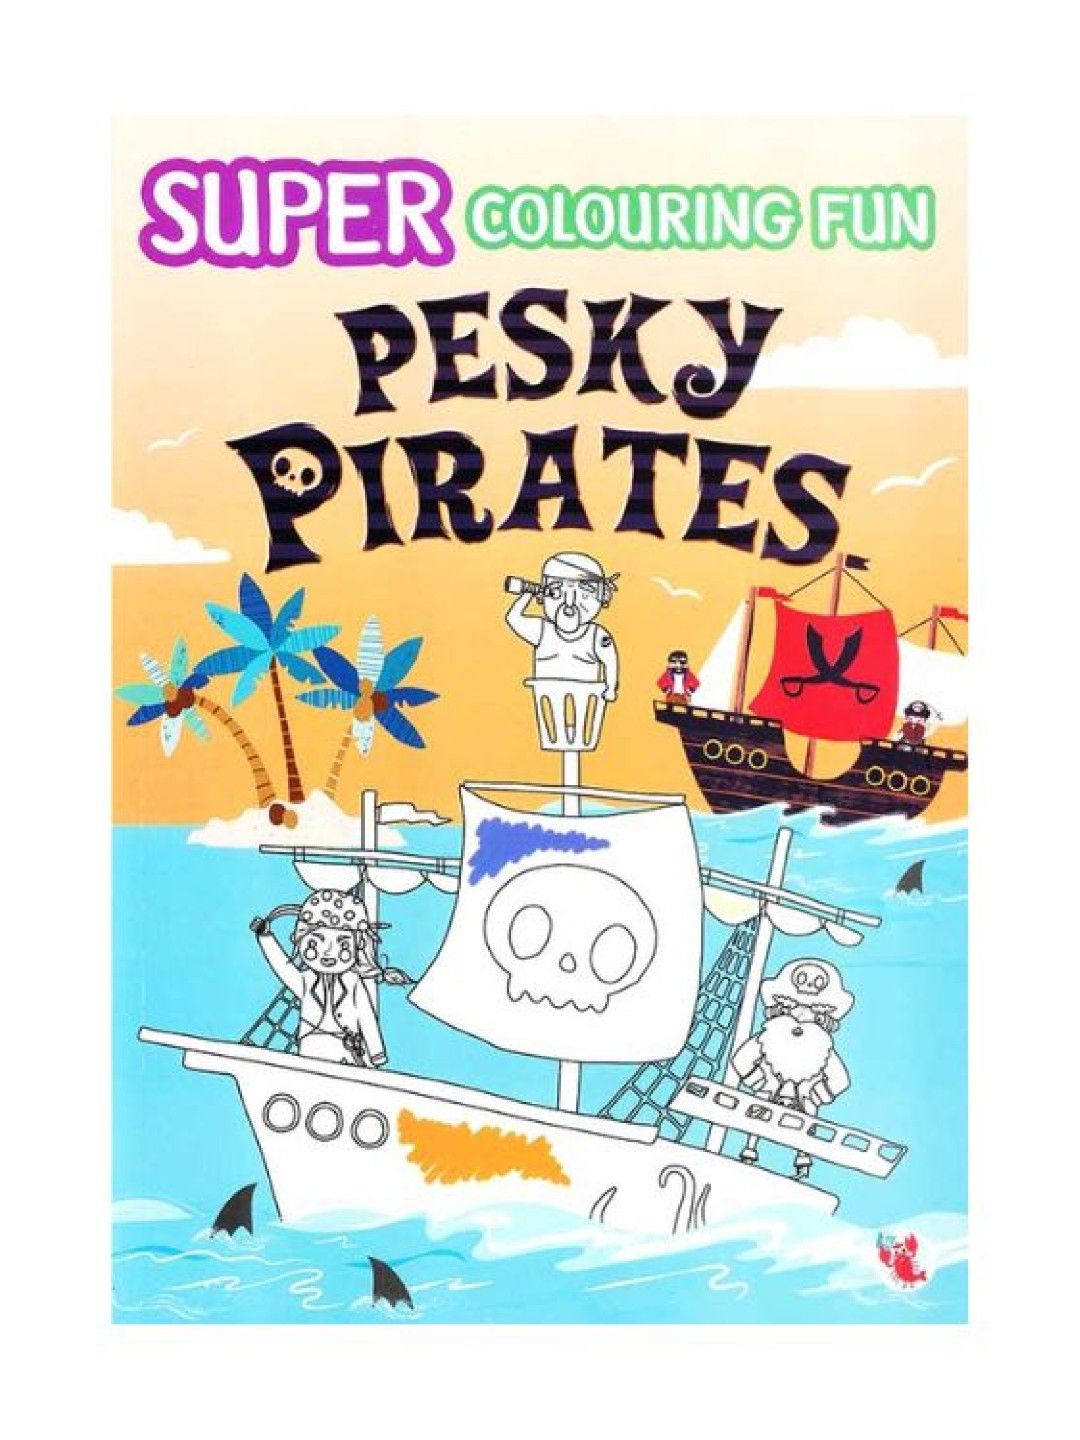 Learning is Fun Super Coloring Fun - Pesky Pirates